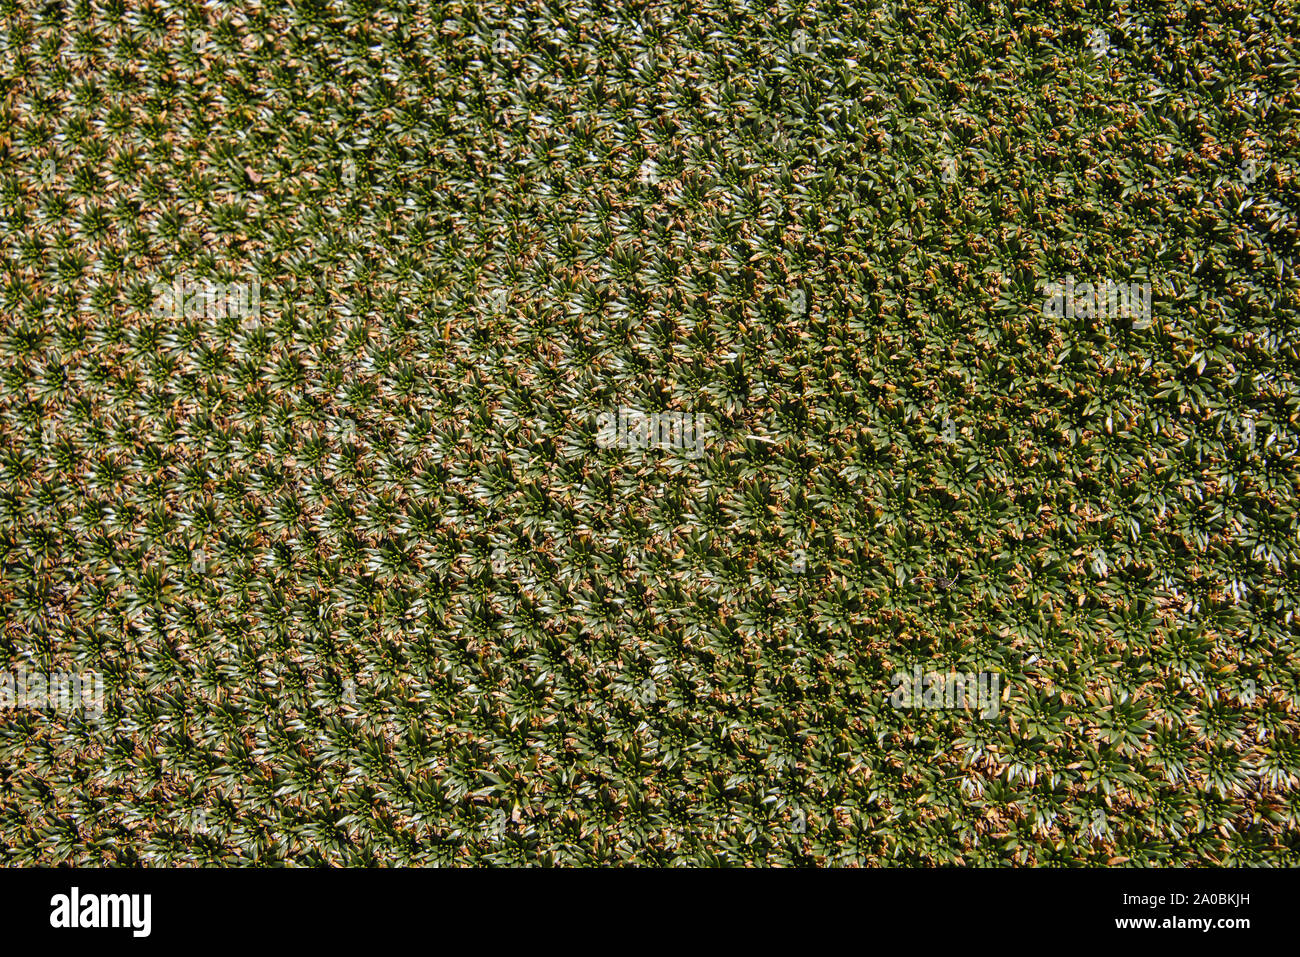 Yareta (Llareta) plantes (Azorella compacta ) qui poussent au-dessus de 3 000 mètres sur la cordillère Huayhuash circuit, Ancash, Pérou Banque D'Images